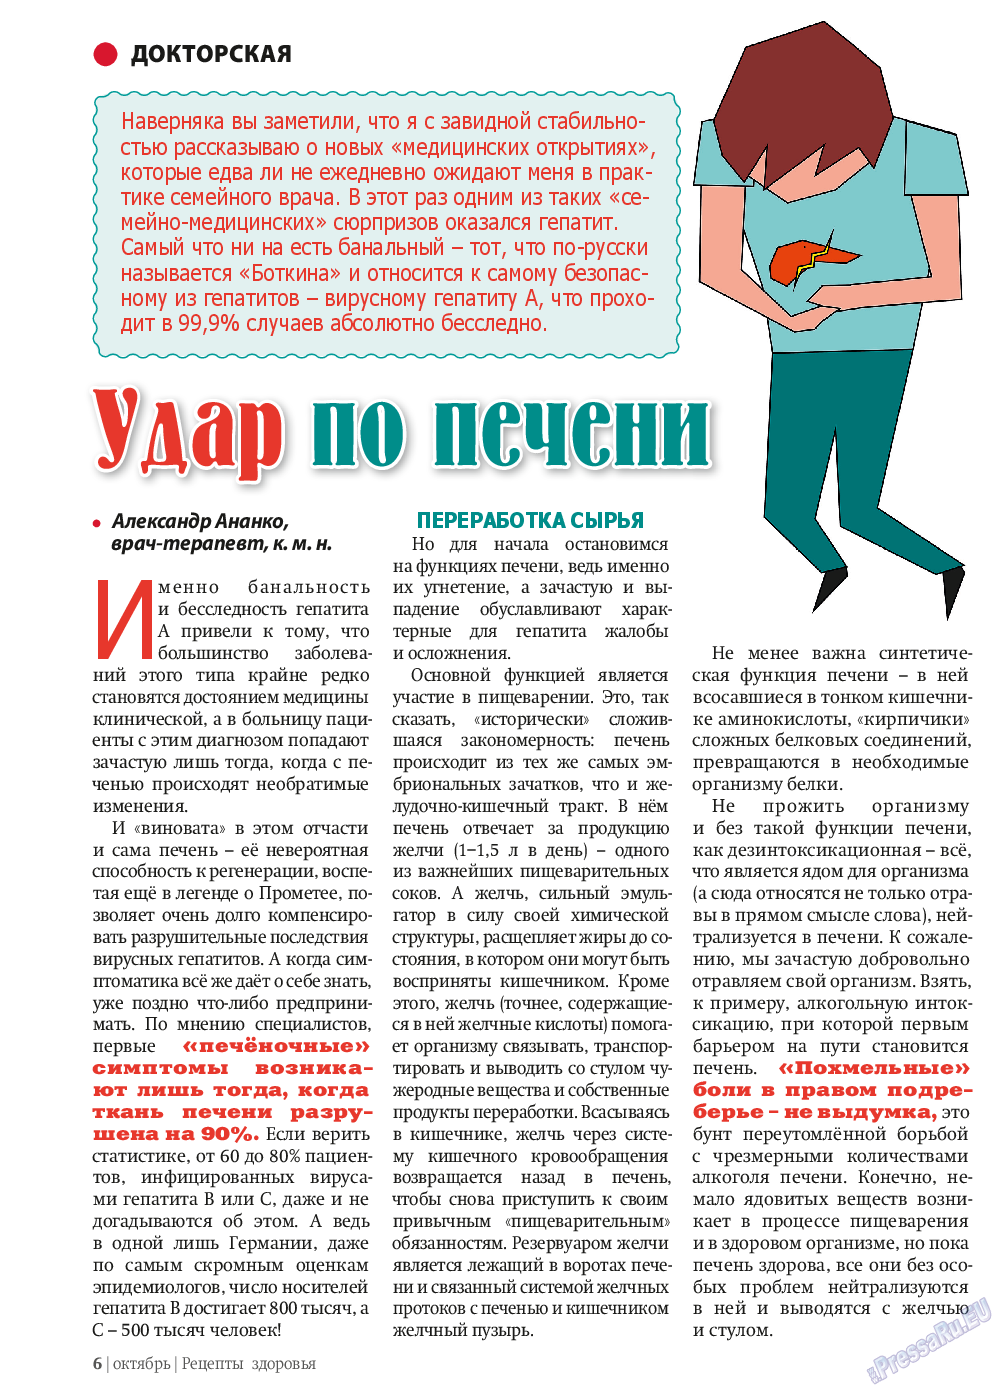 Рецепты здоровья, журнал. 2013 №10 стр.6